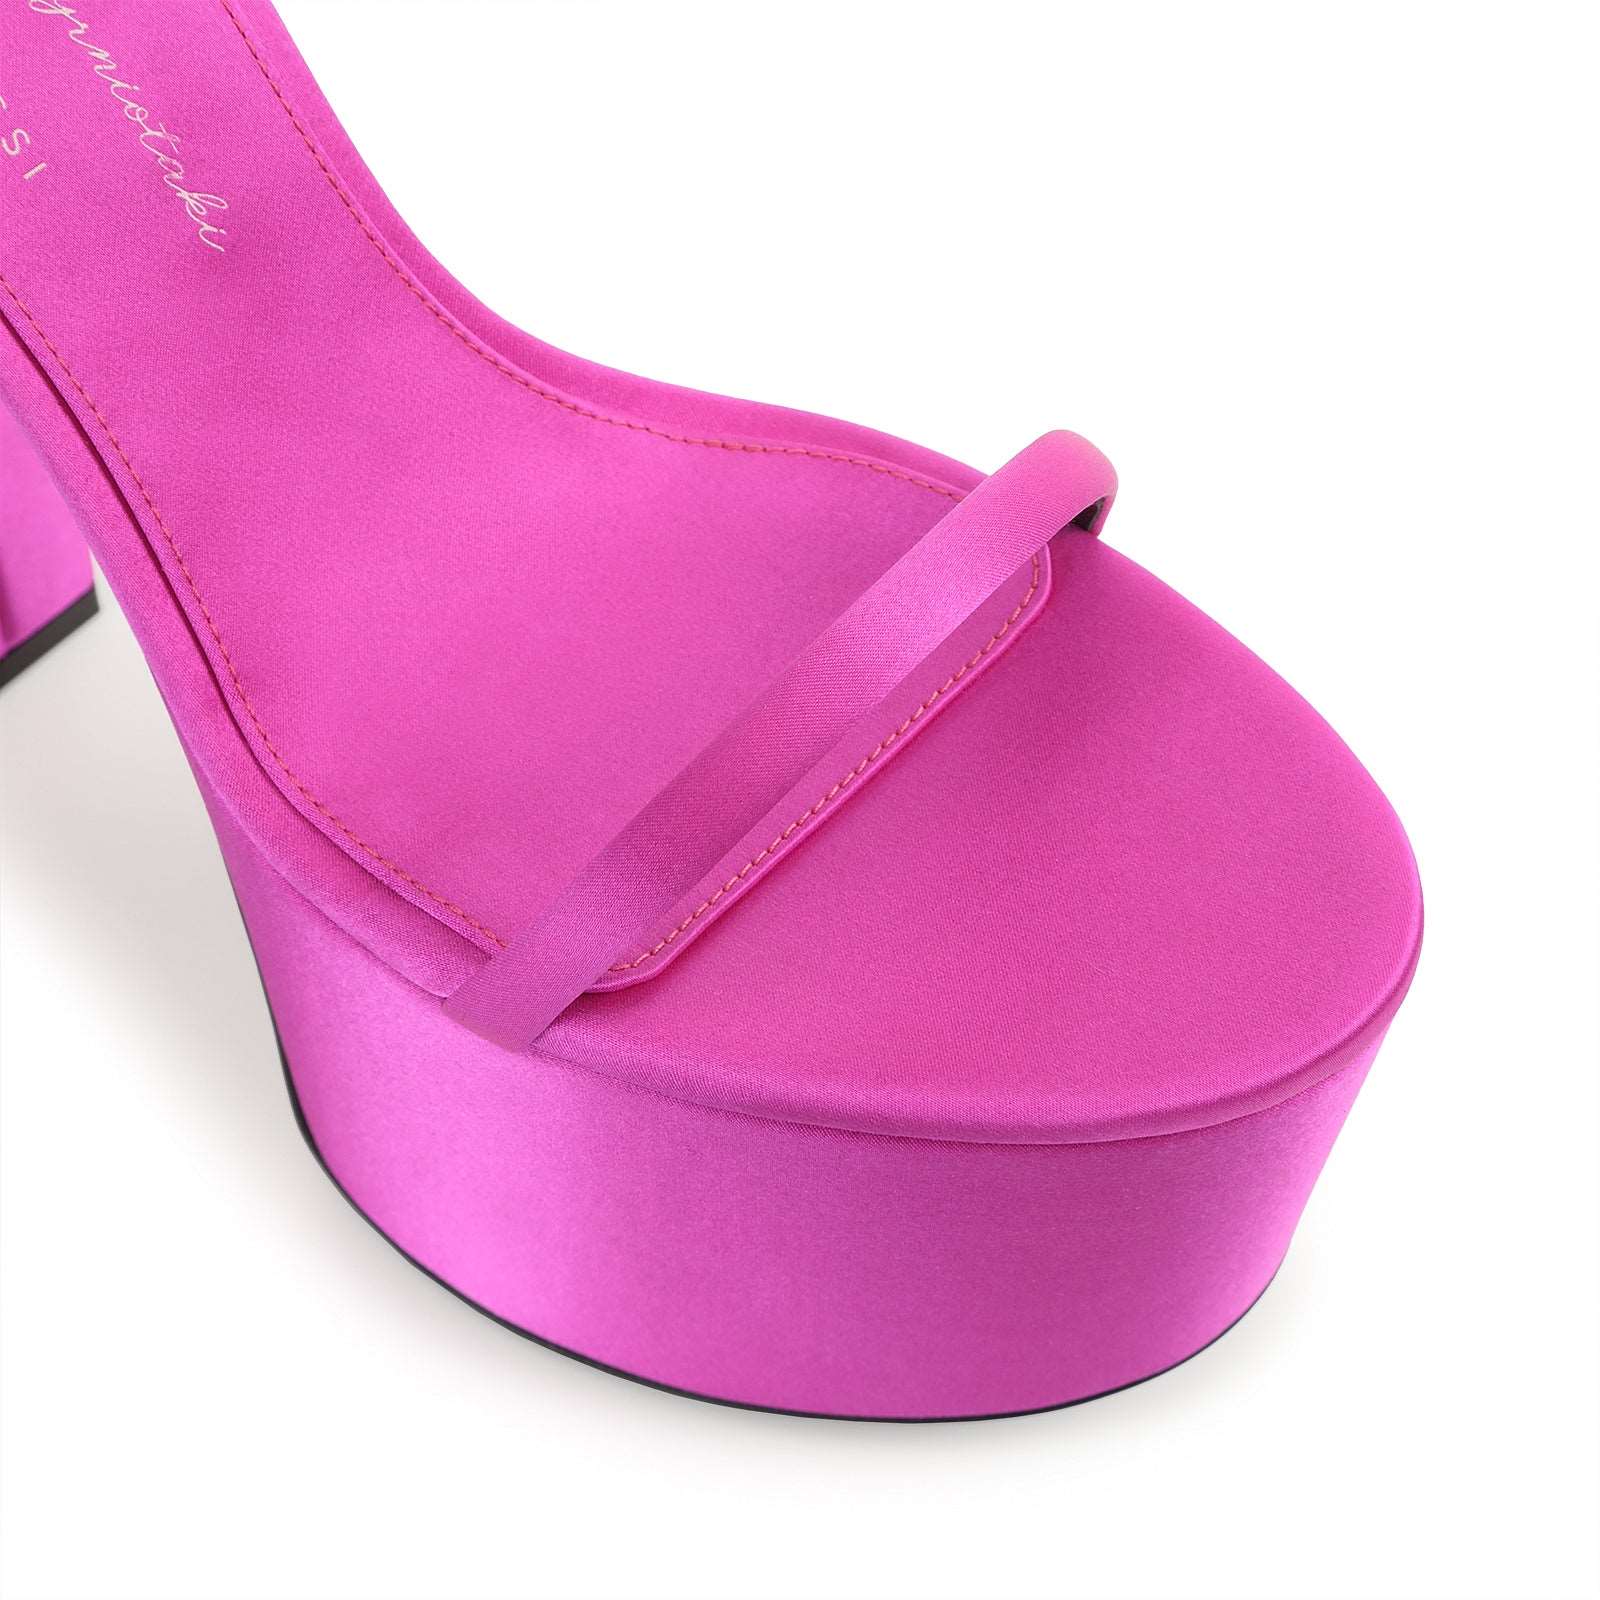 Evangelie Sandal Heel|B01210MTEZ02 Pink